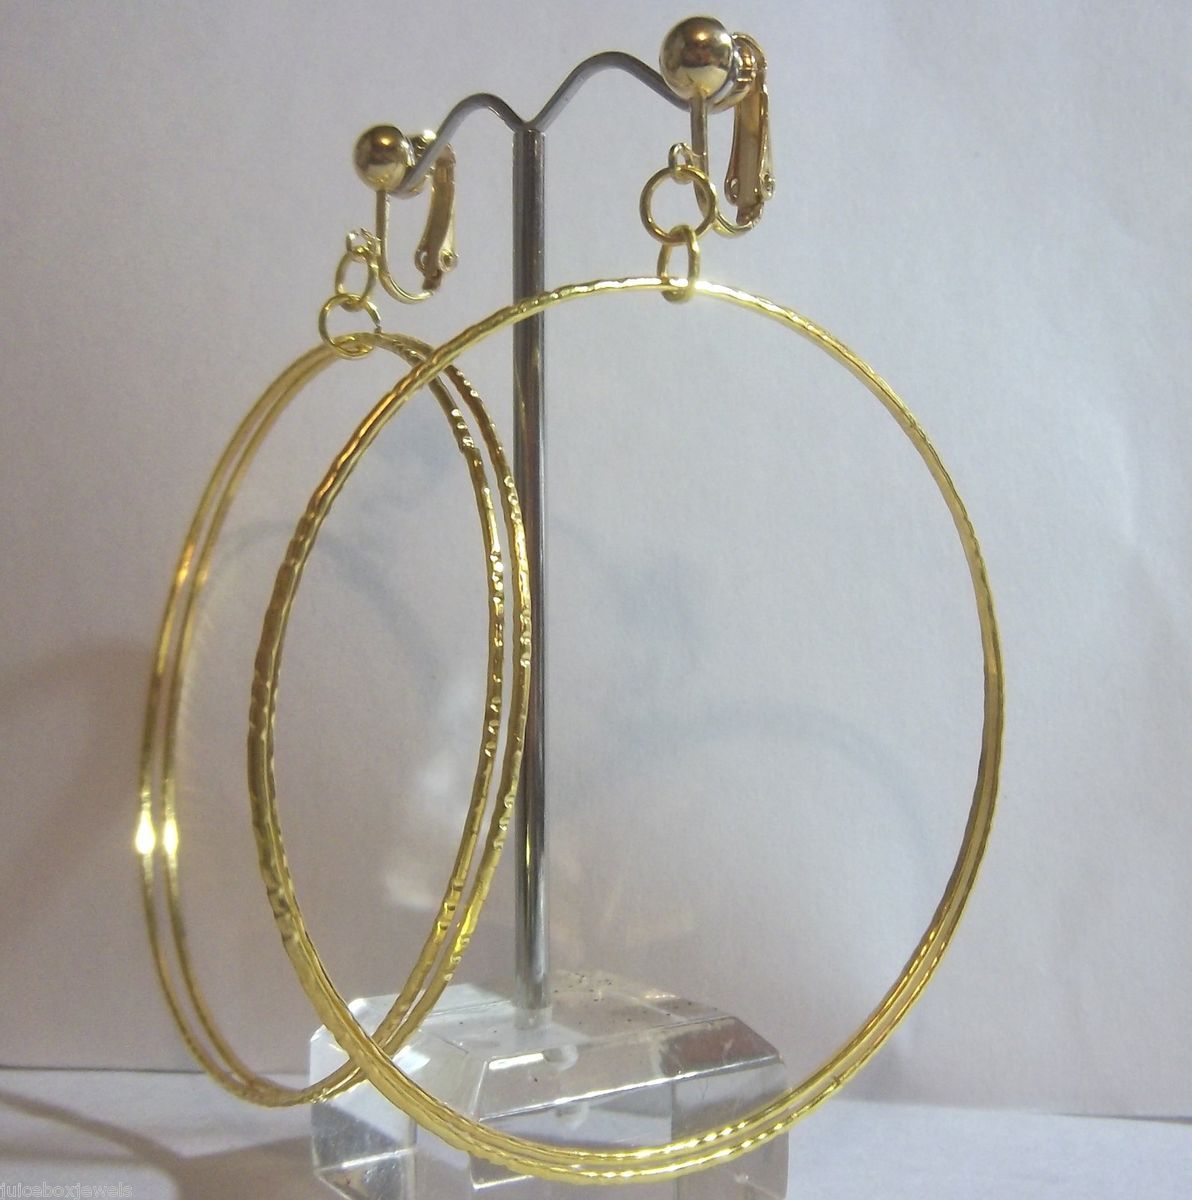  Choose Goldtone Silvertone Double Hoop Non Pierced Earrings USA